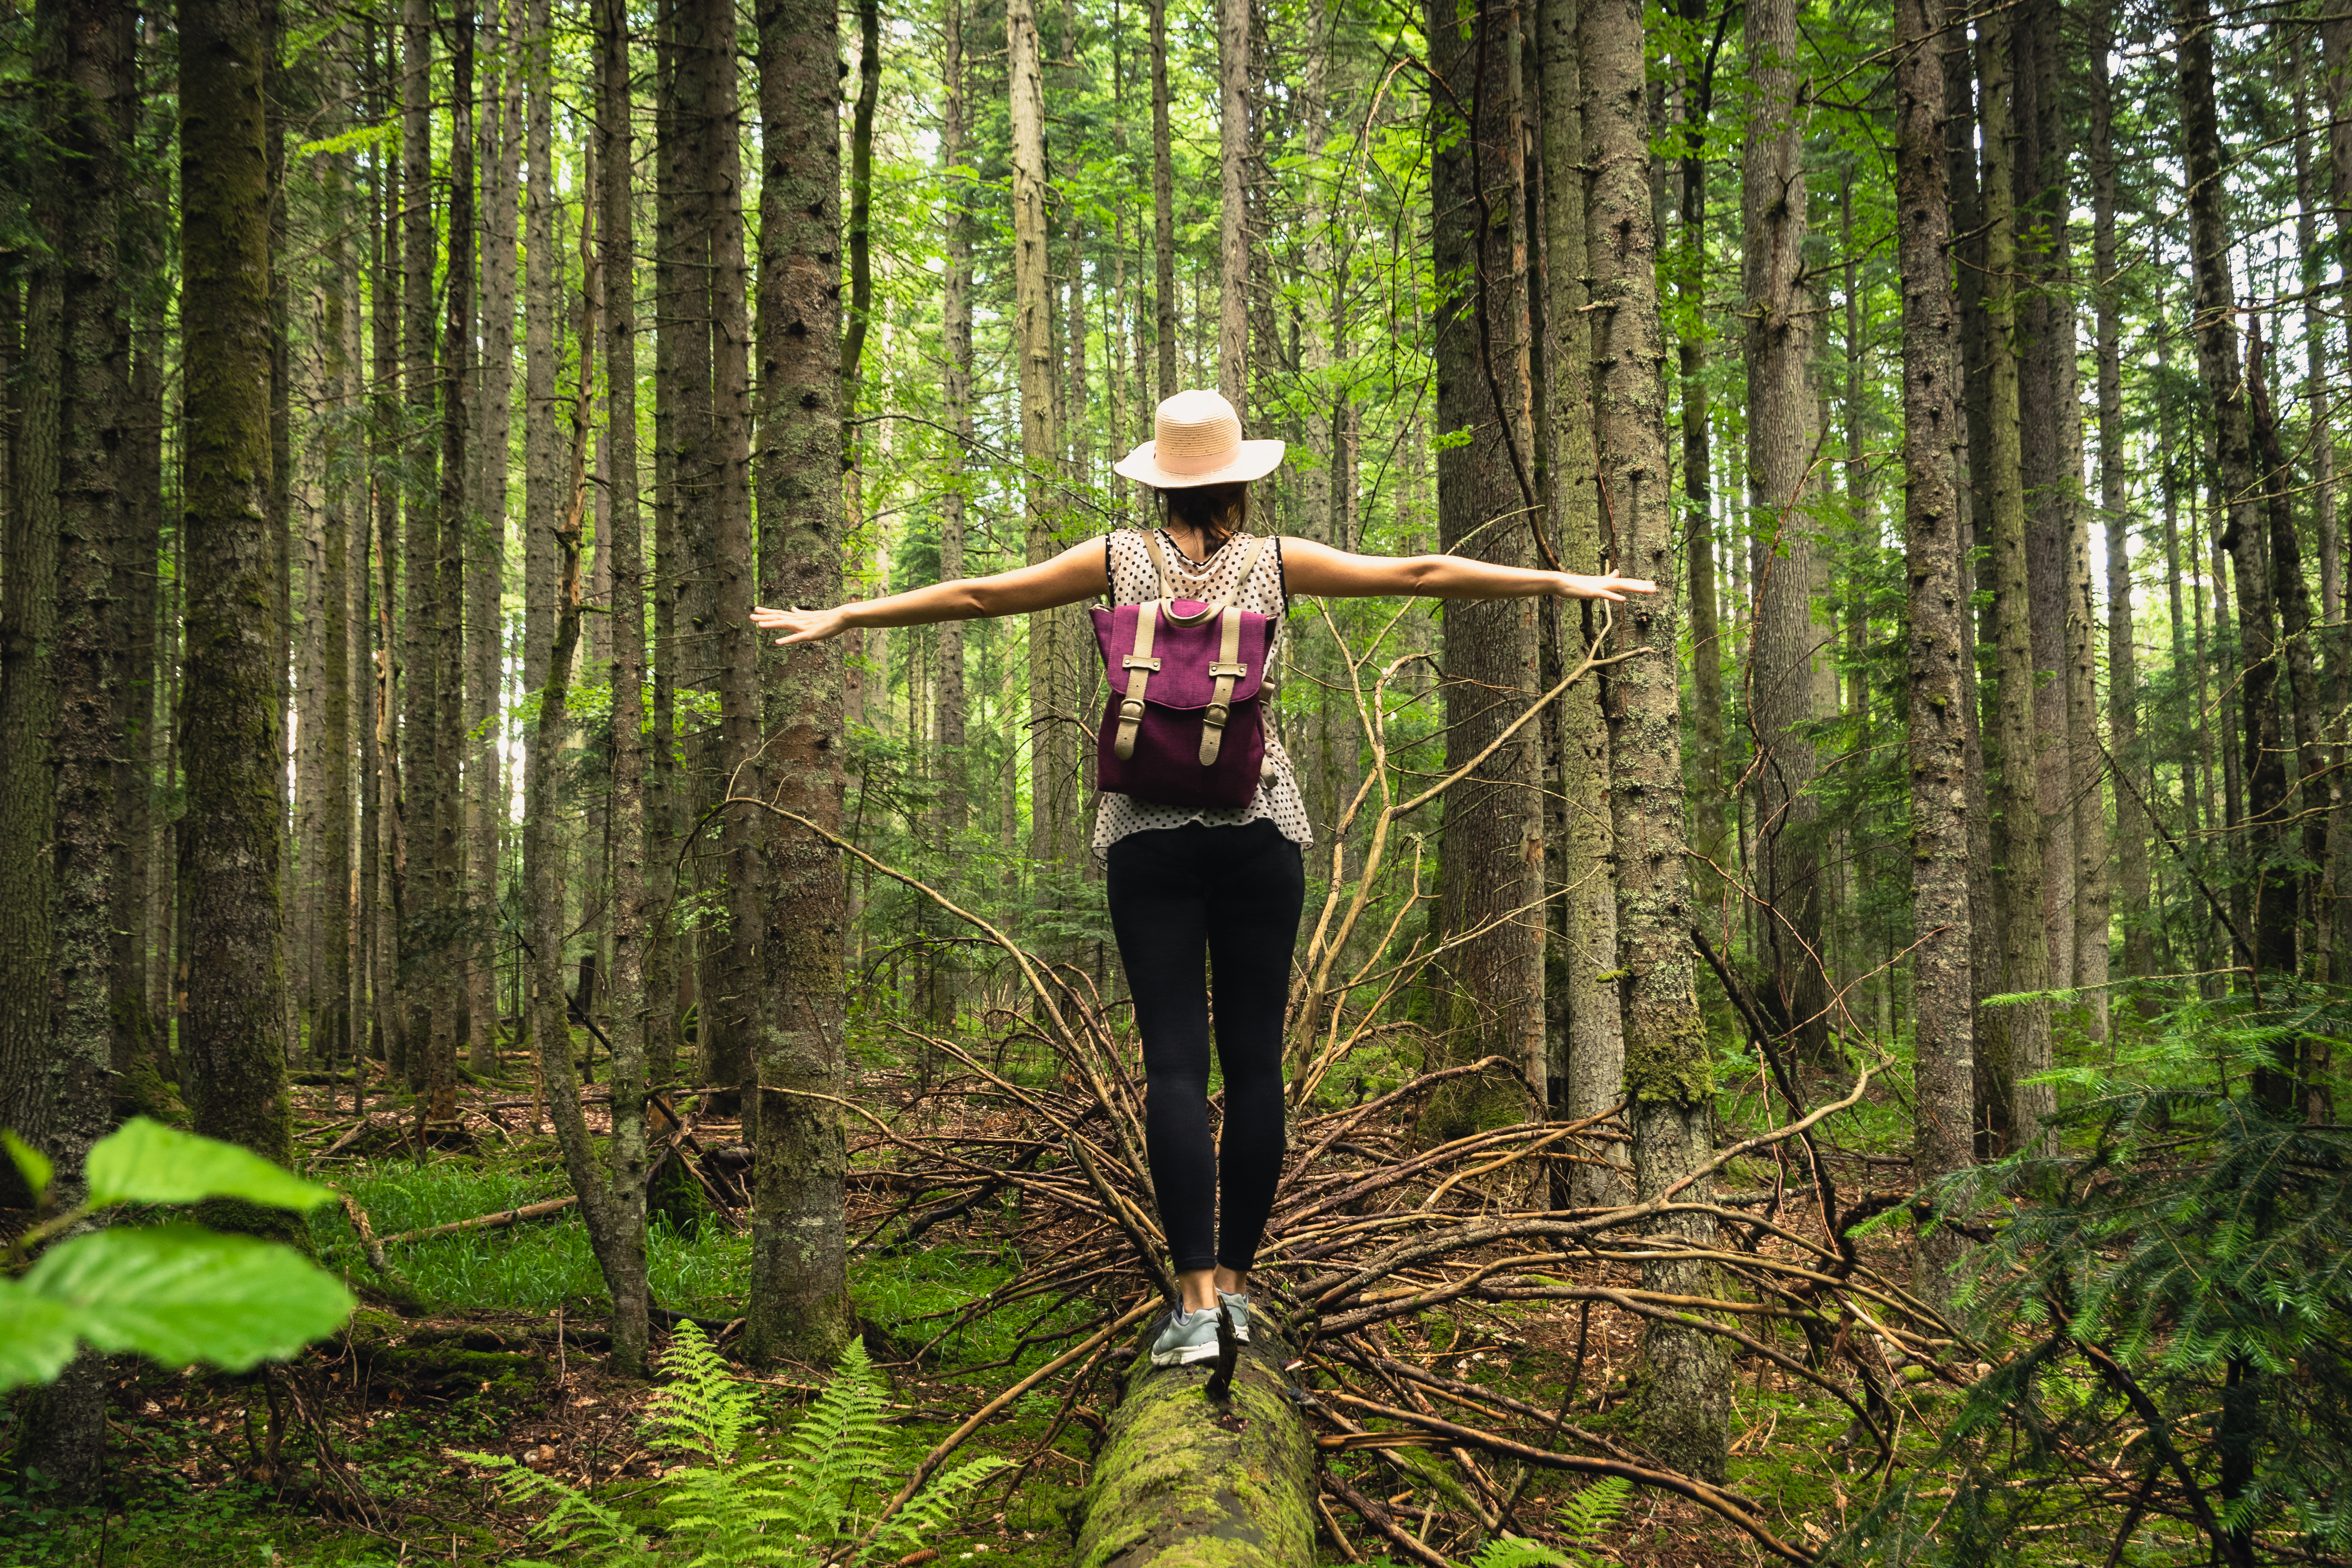 Frau von hinten in einem Wald, die auf einem umgefallenen Baumstamm balanciert.